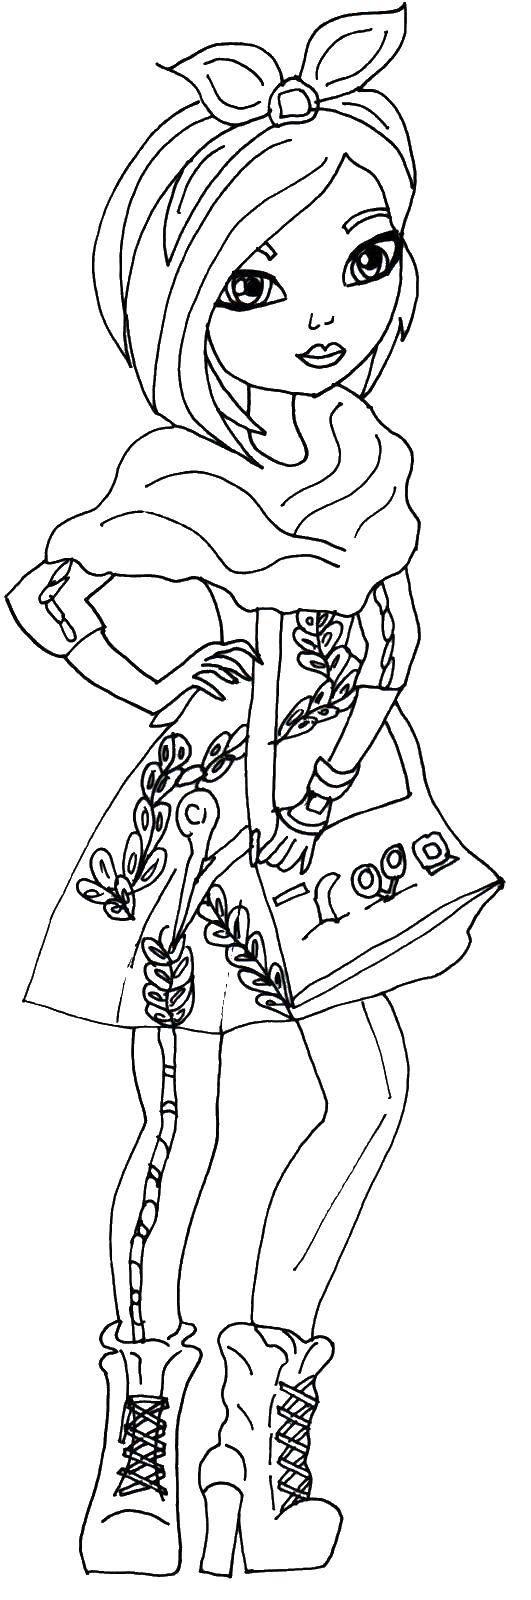 Раскраски с серии кукол Эвер Афтер Хай, раскраски девочек по мультфильму Эвер Афтер Хай  Раскраска кукла с короткими волосами из серии Эвер Афтер Хай